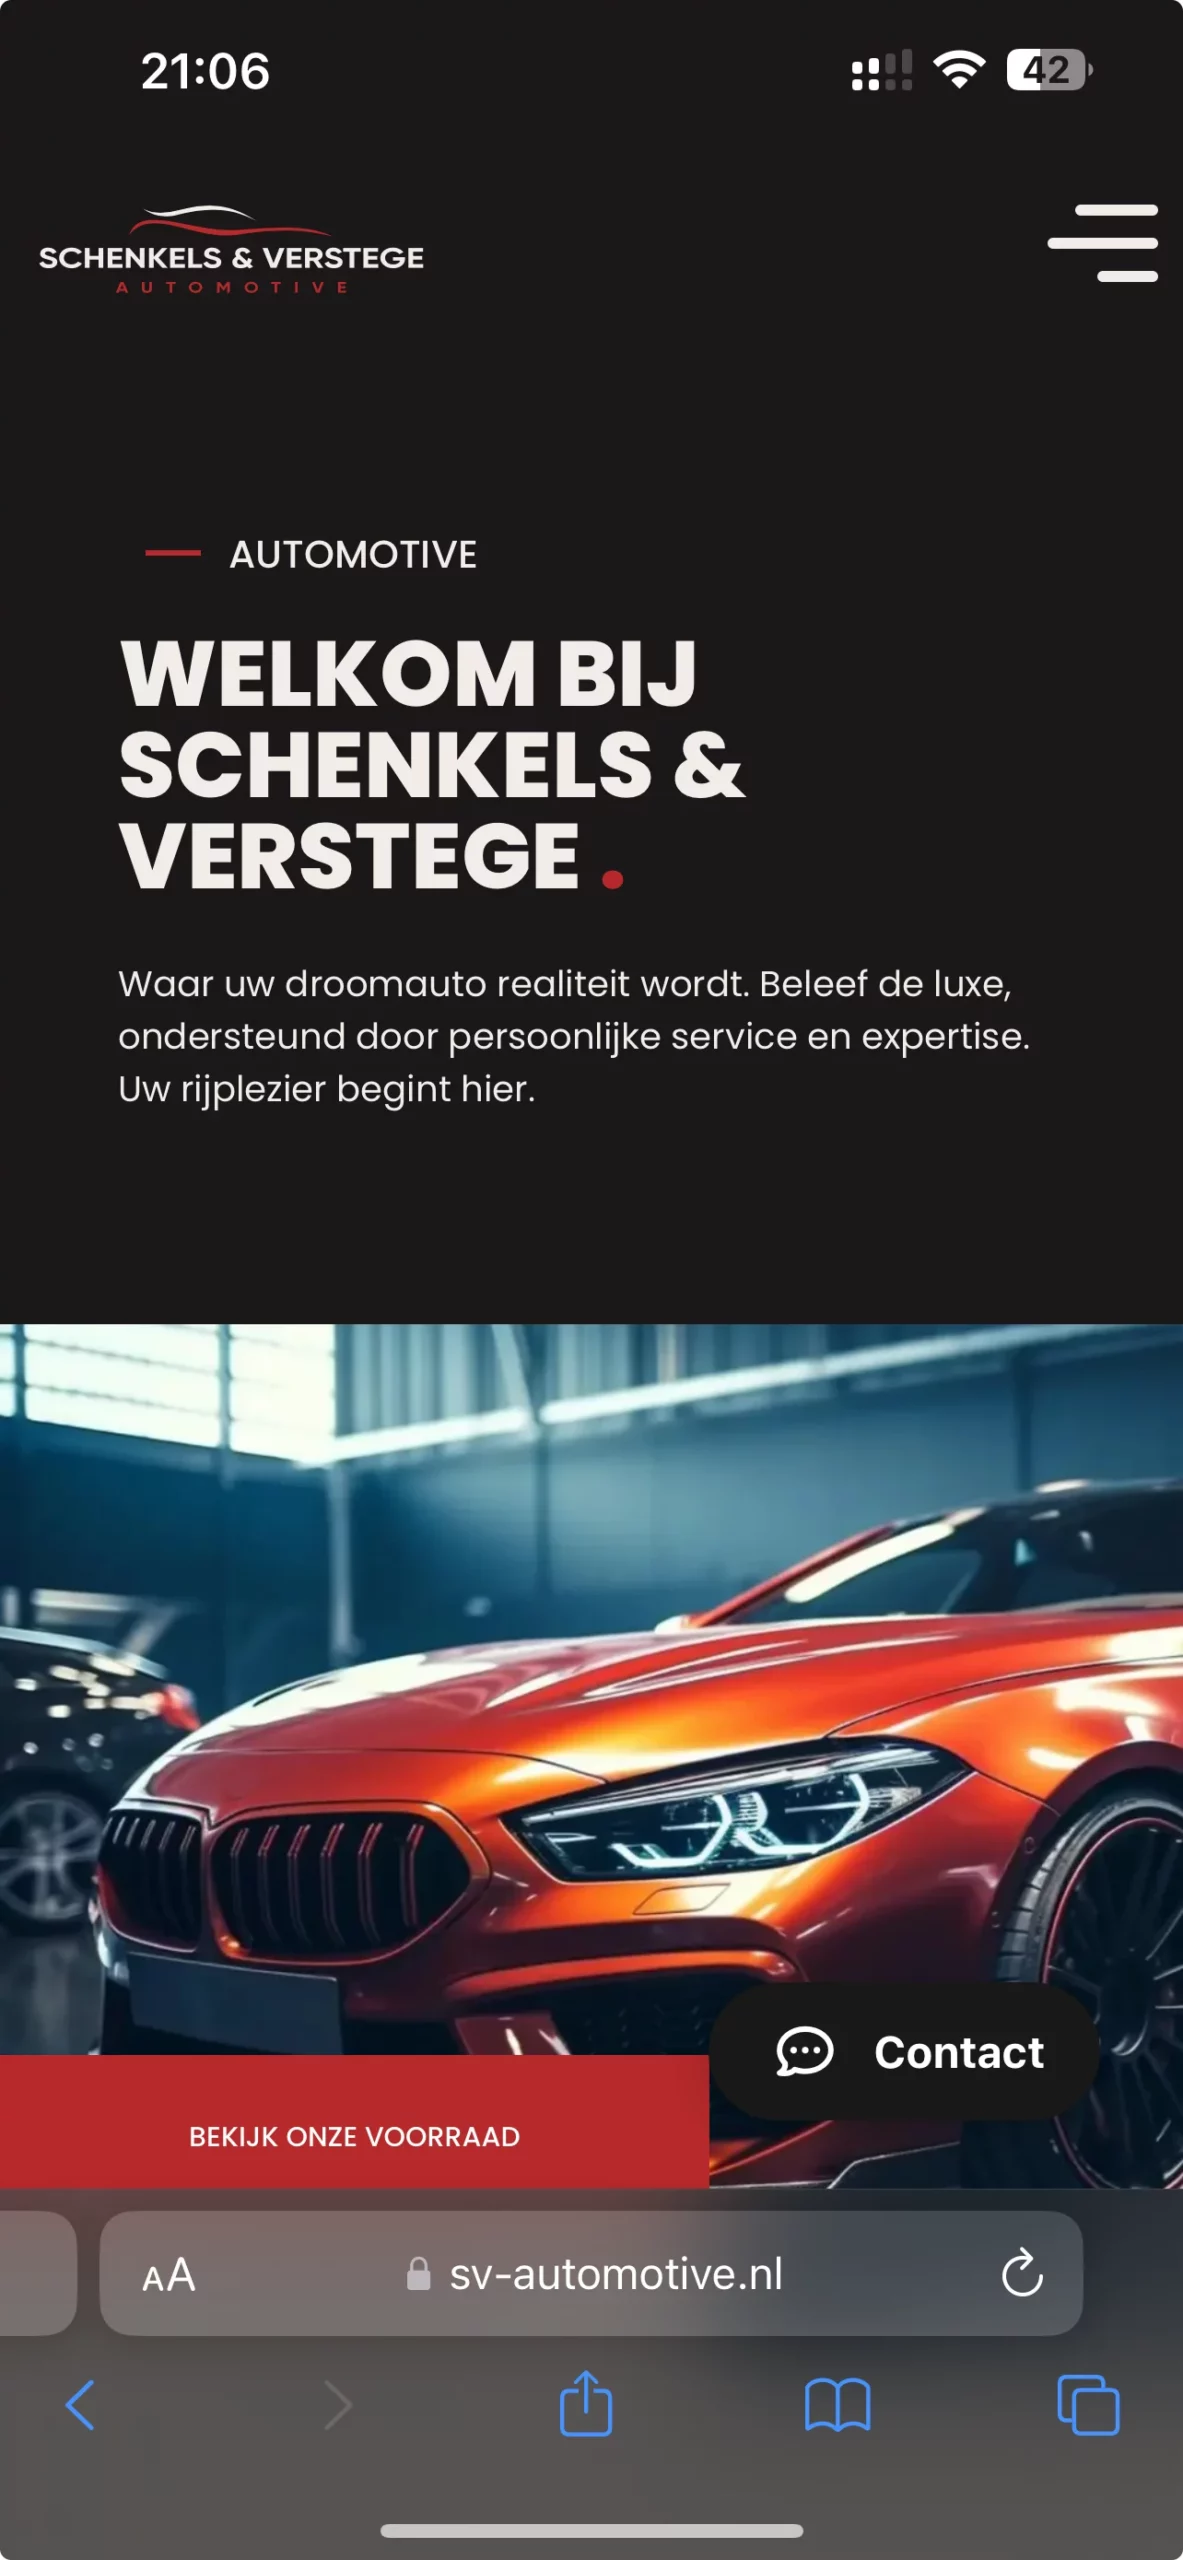 Welkomstpagina Schenkels & Verstege Automotive met luxe auto.